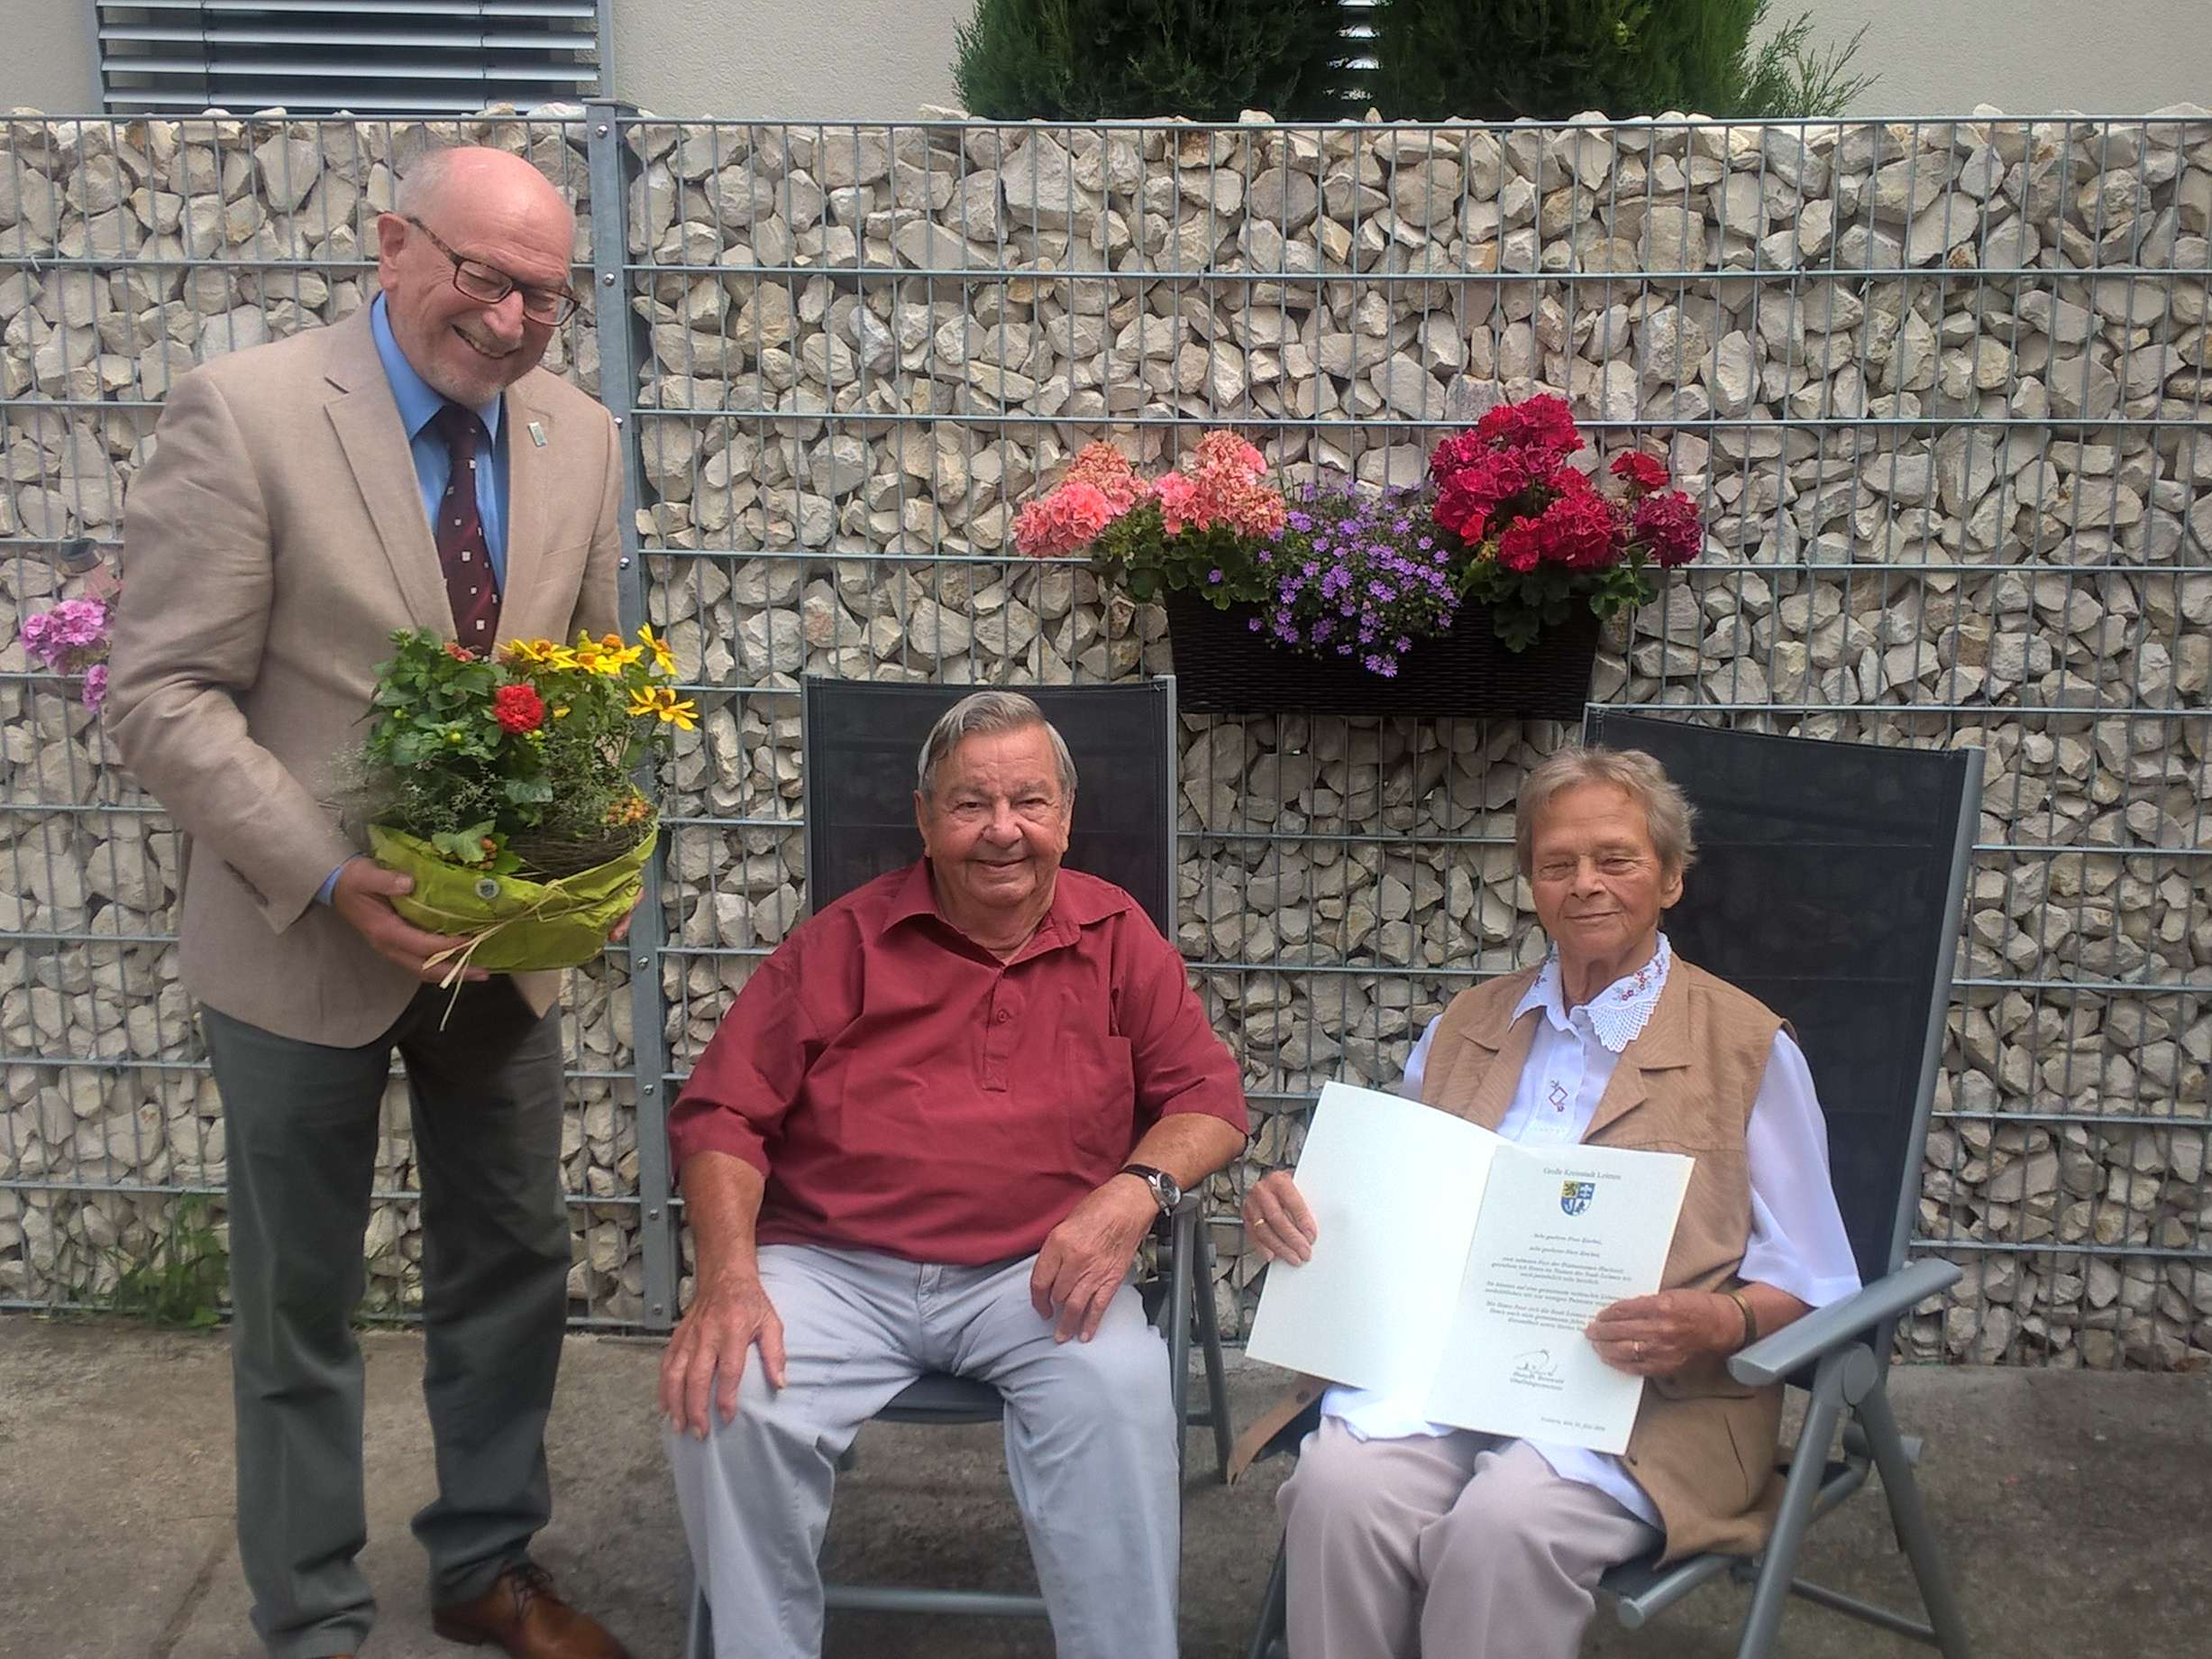  v.l.n.r.: Bürgermeister-Stellvertreter Richard Bader überbrachte die Glückwünsche den Jubilaren Hugo und Renate Knebel 